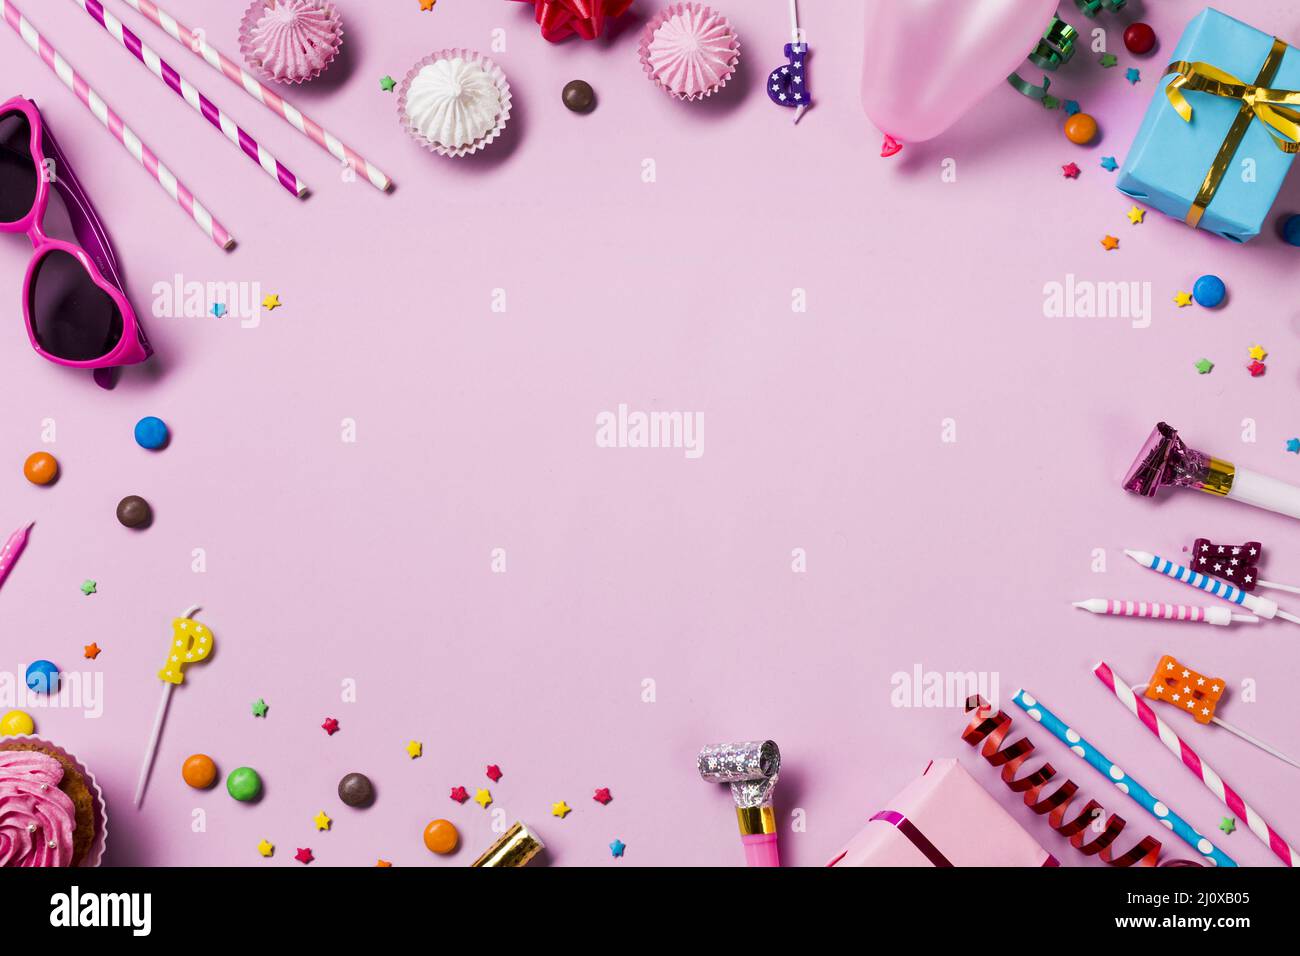 Blanker runder Rahmen mit Geburtstagsfeier Artikel rosa Hintergrund gemacht. Hochwertiges, schönes Fotokonzept Stockfoto